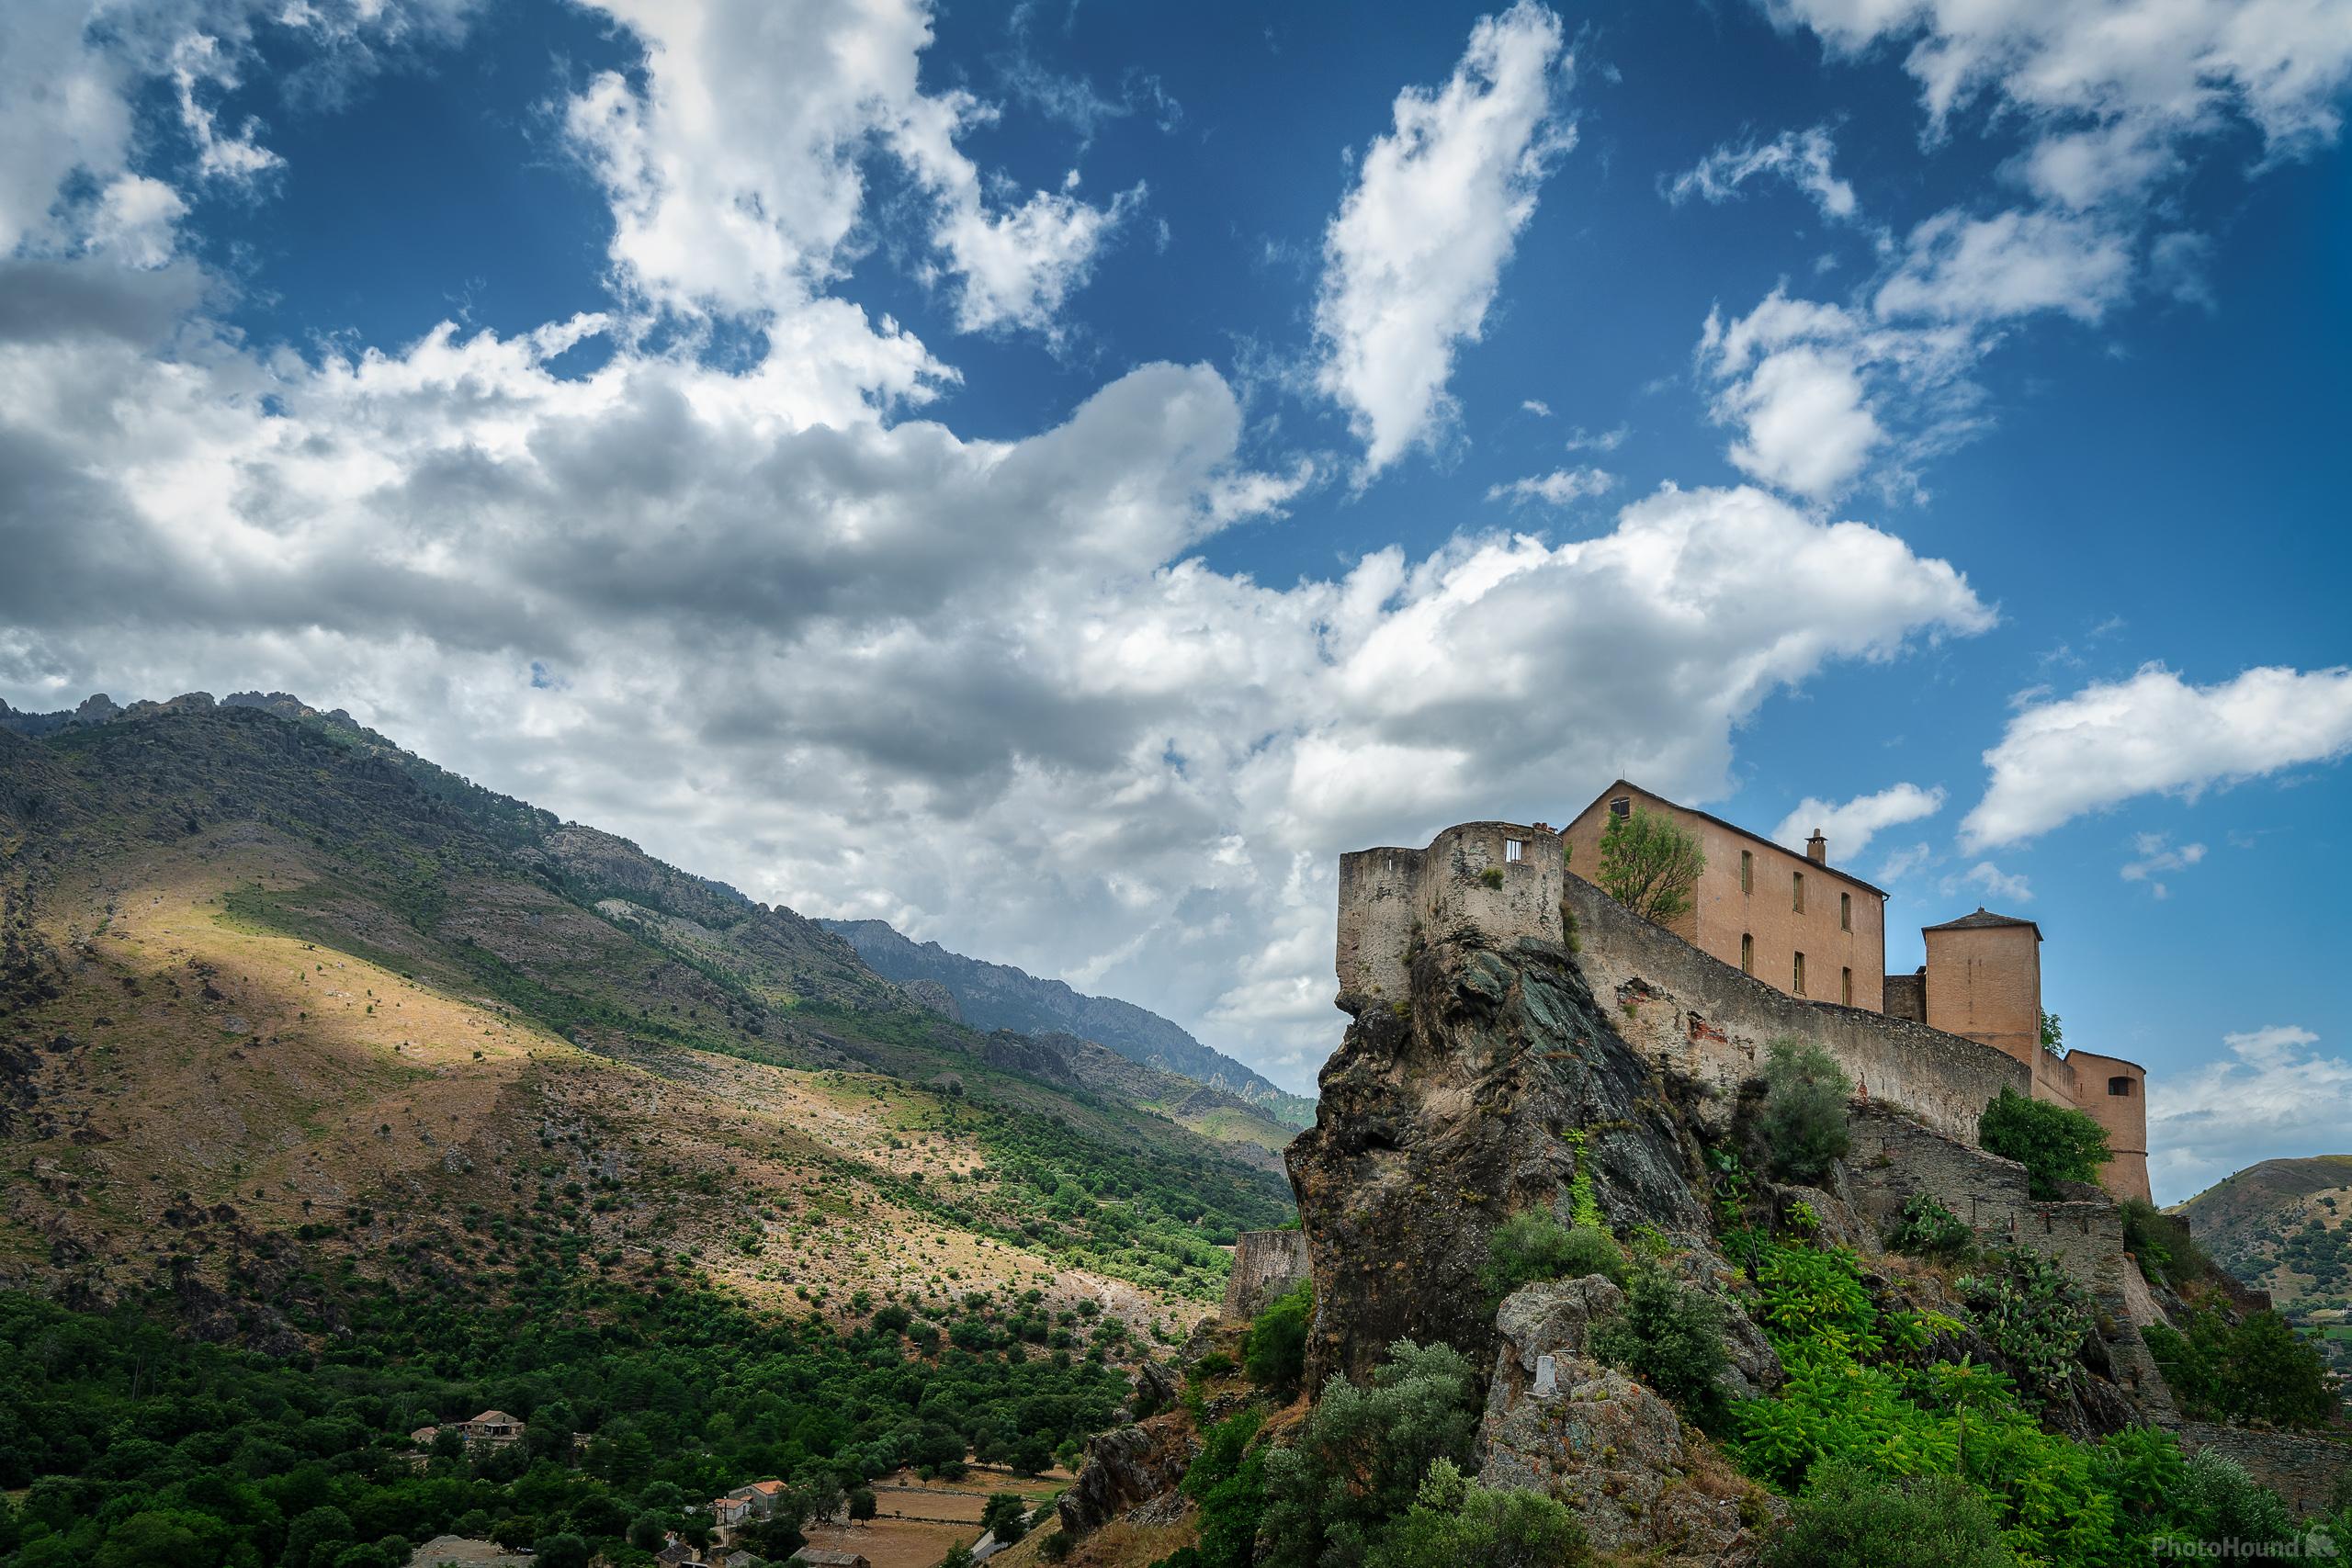 Image of Corte: La Citadella from the Viewpoint Belvedere by Raimondo Giamberduca